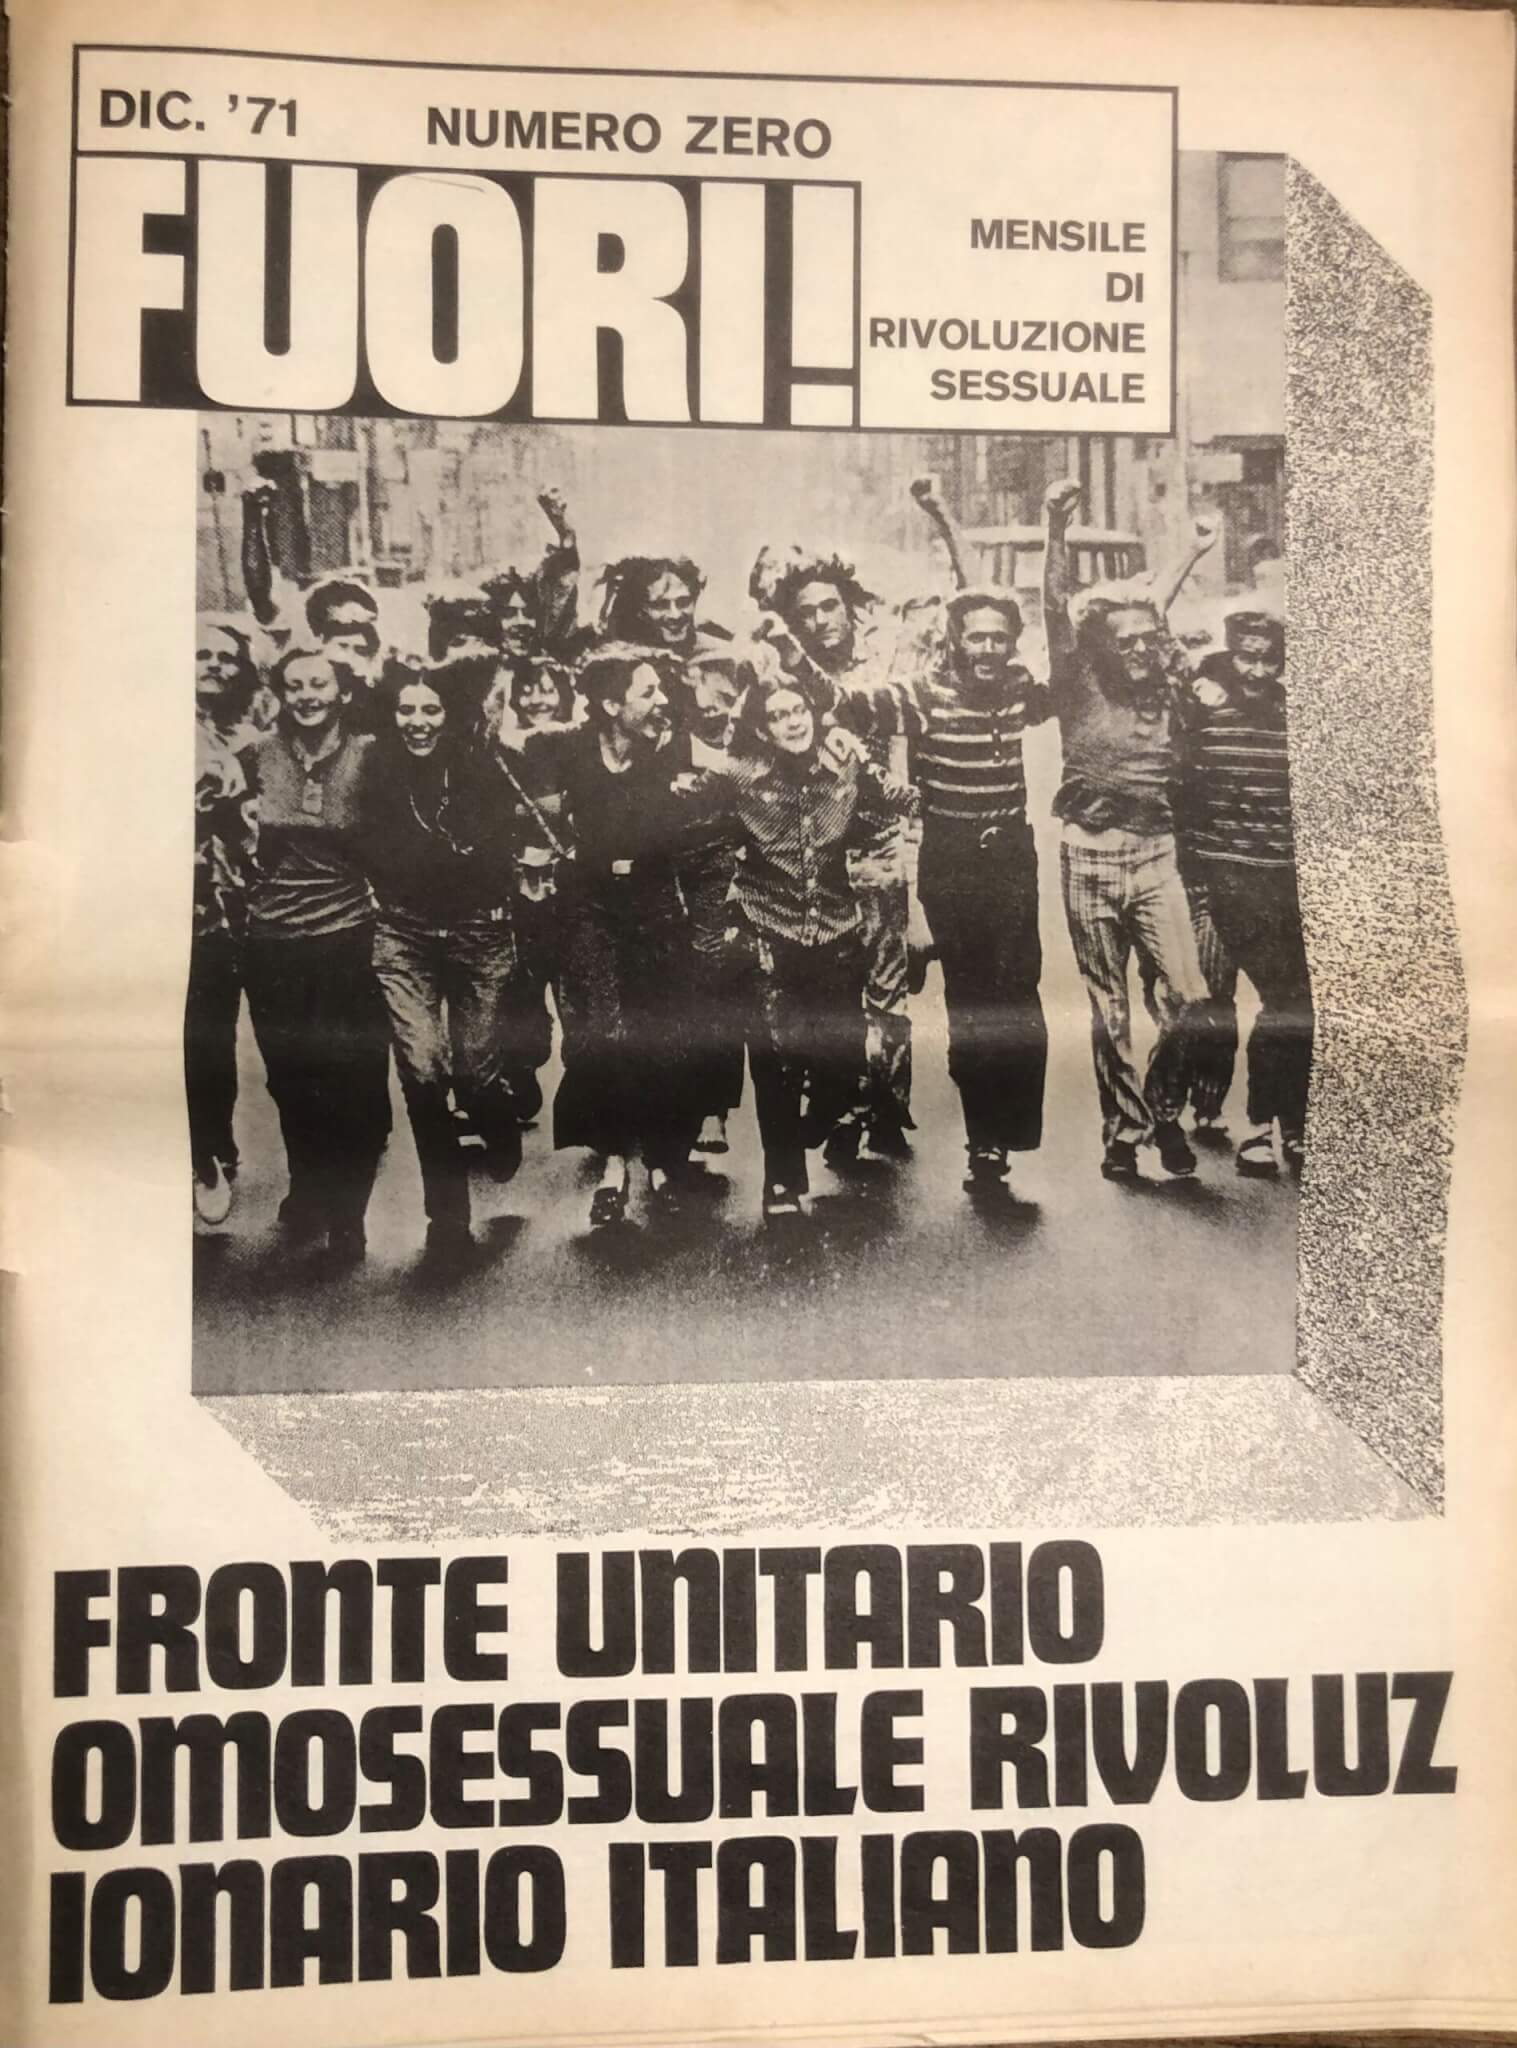 FUORI!, diventa consultabile online la storia del primo movimento di liberazione omosessuale in Italia - FUORI copertina scaled - Gay.it